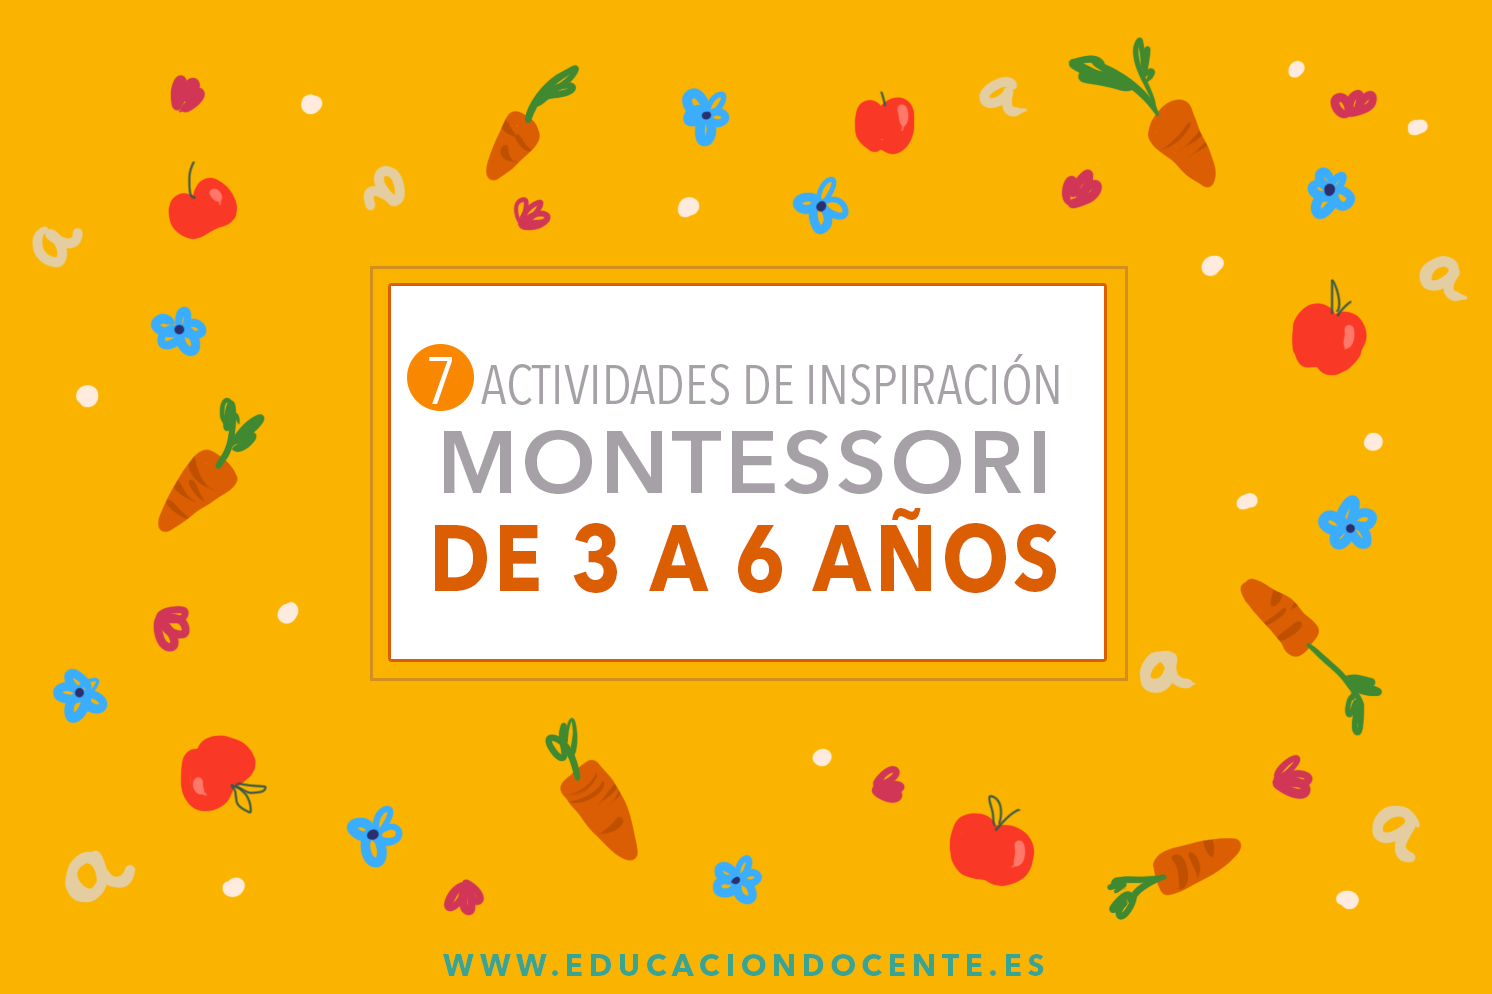 https://educaciondocente.es/blog/wp-content/uploads/2016/11/7montessori_ED.png